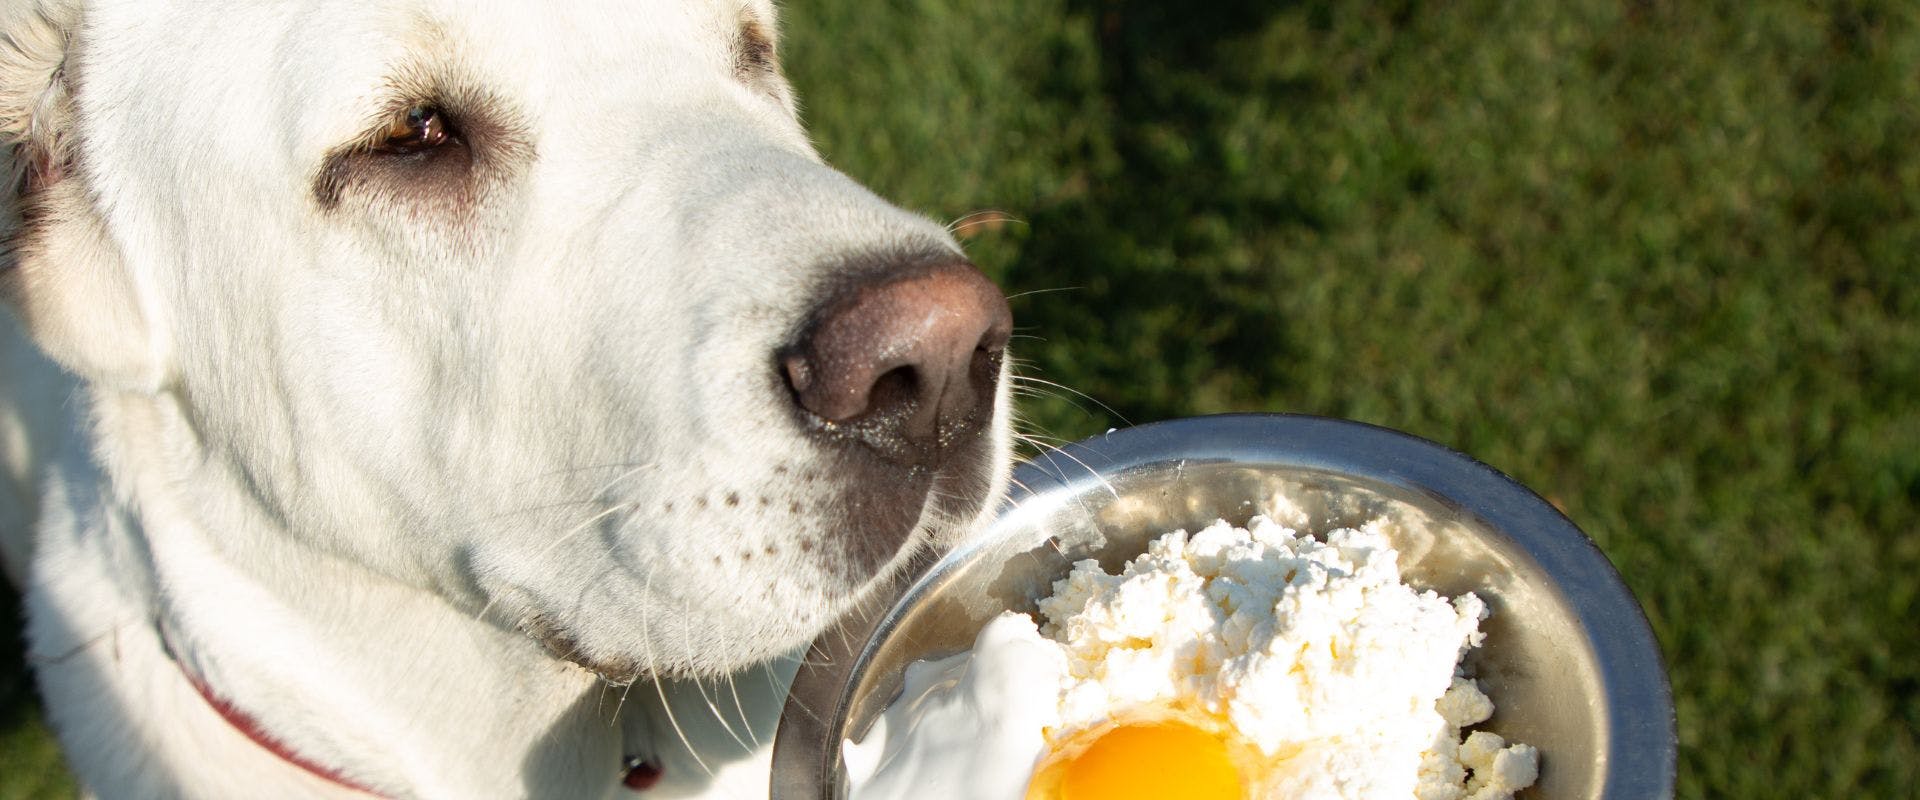 White dog sniffing yogurt bowl